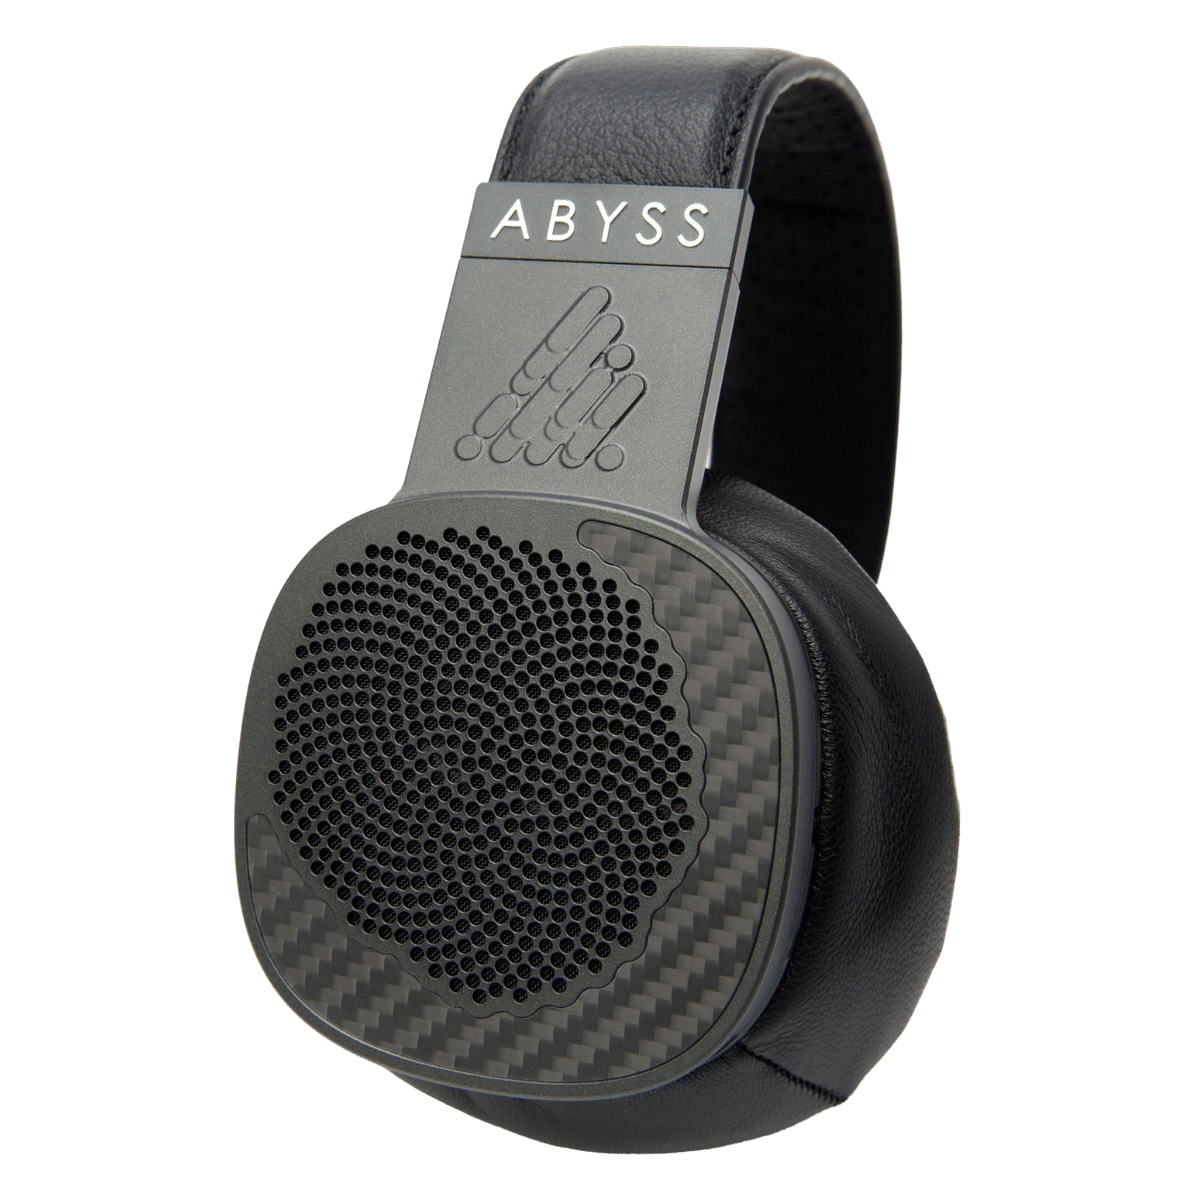 Abyss Diana MR Premium Headphones